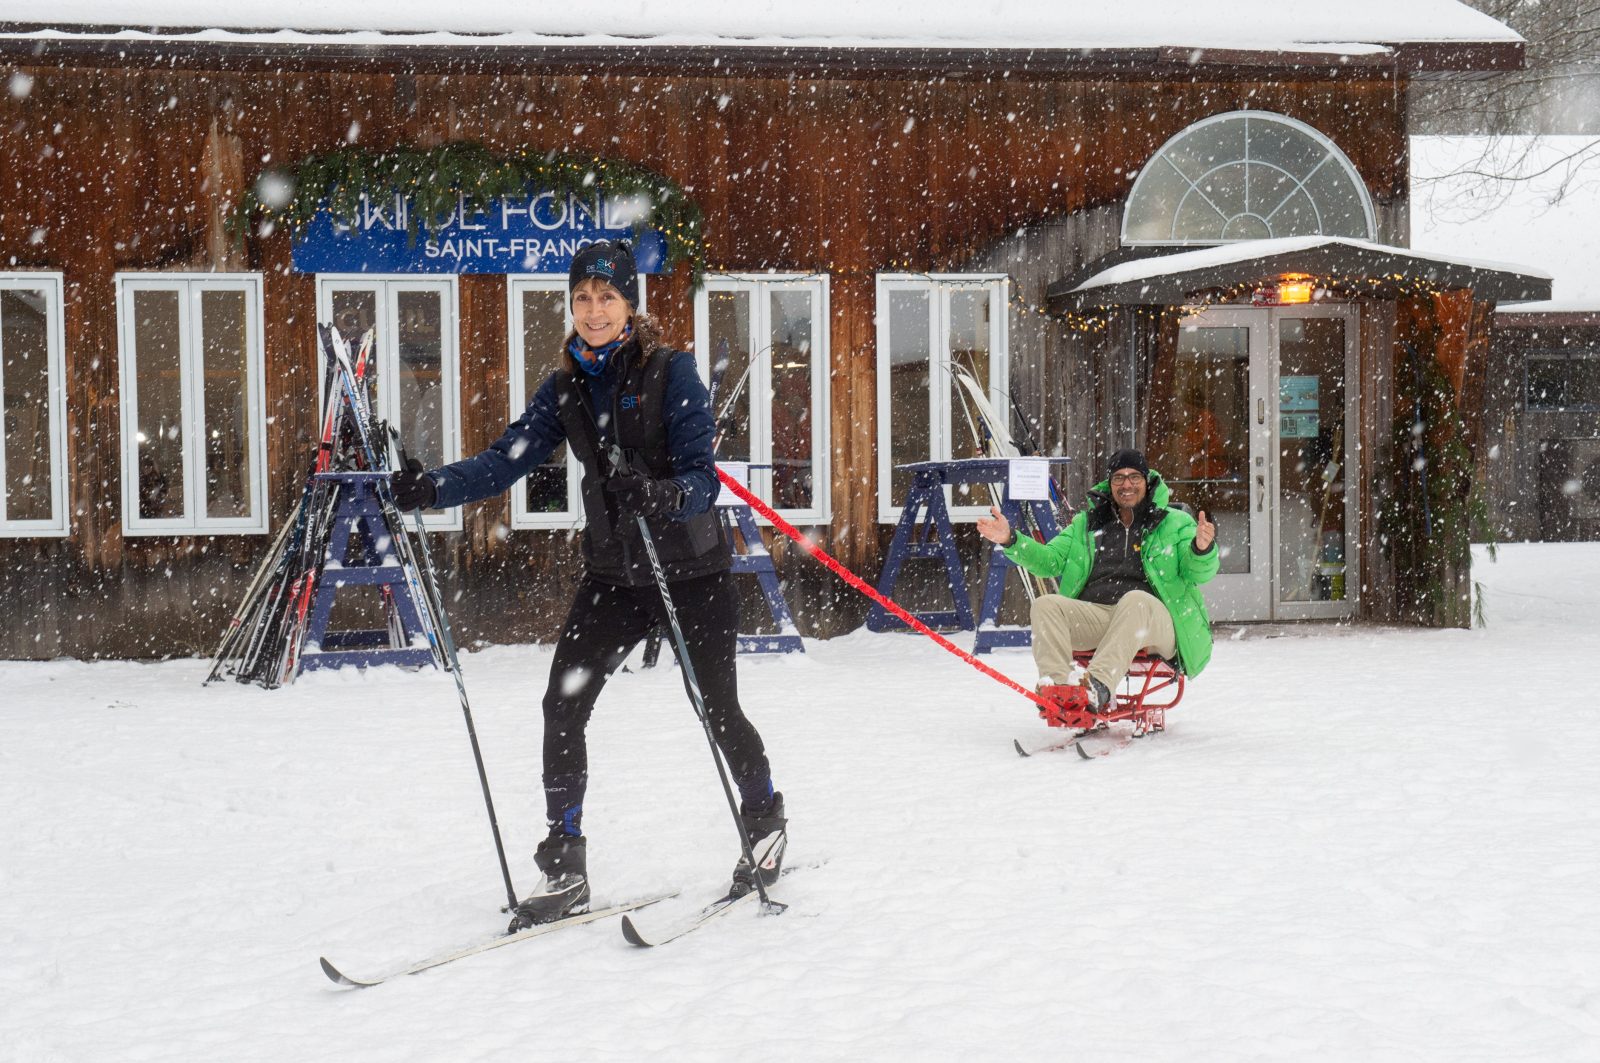 Ski de fond Saint-François s’équipe d’une luge adaptée